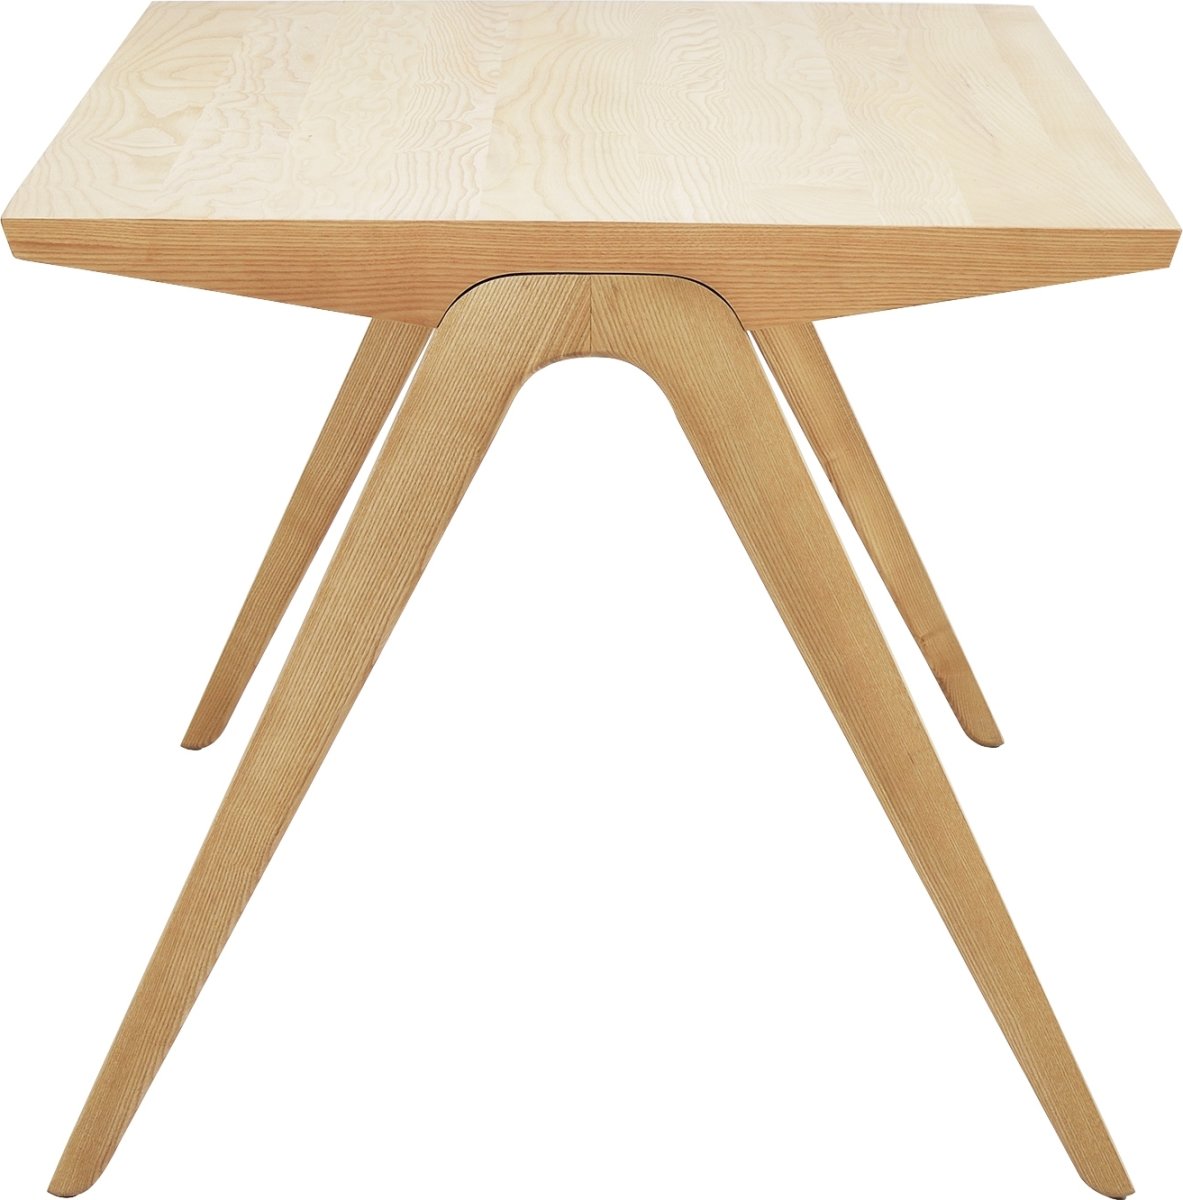 NOFU Mødebord, Massivt asketræ natur, 180x85 cm 